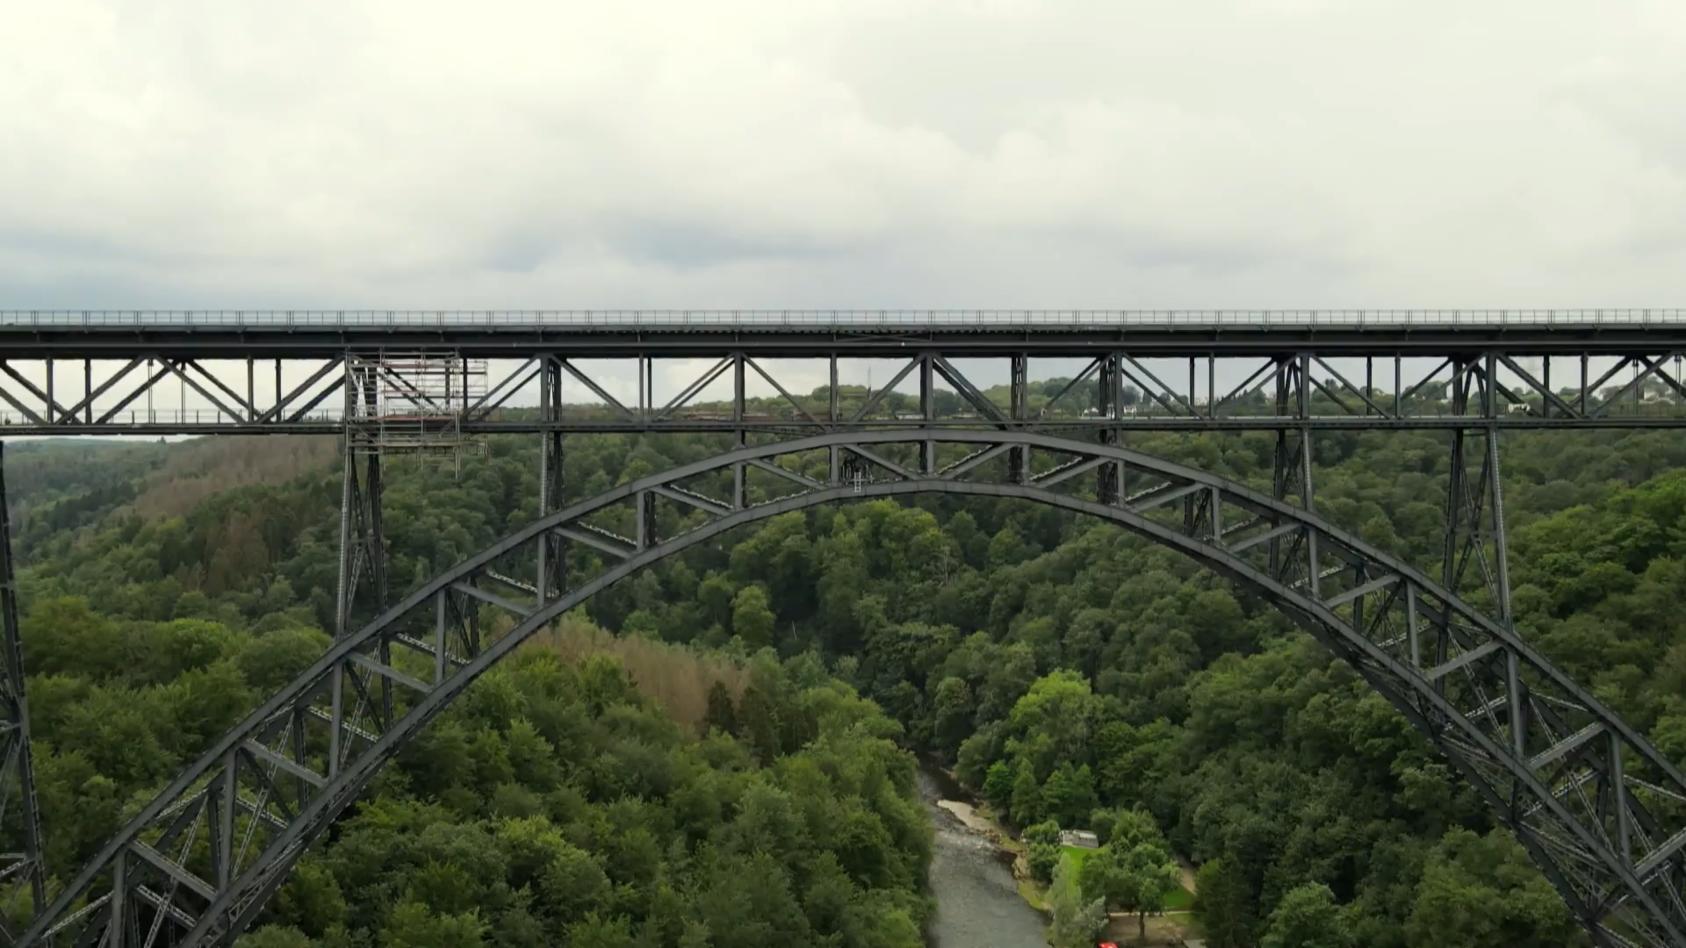 Müngstener Brücke eröffnet für Besucher Adrenalin-Kick in 100 Metern Höhe